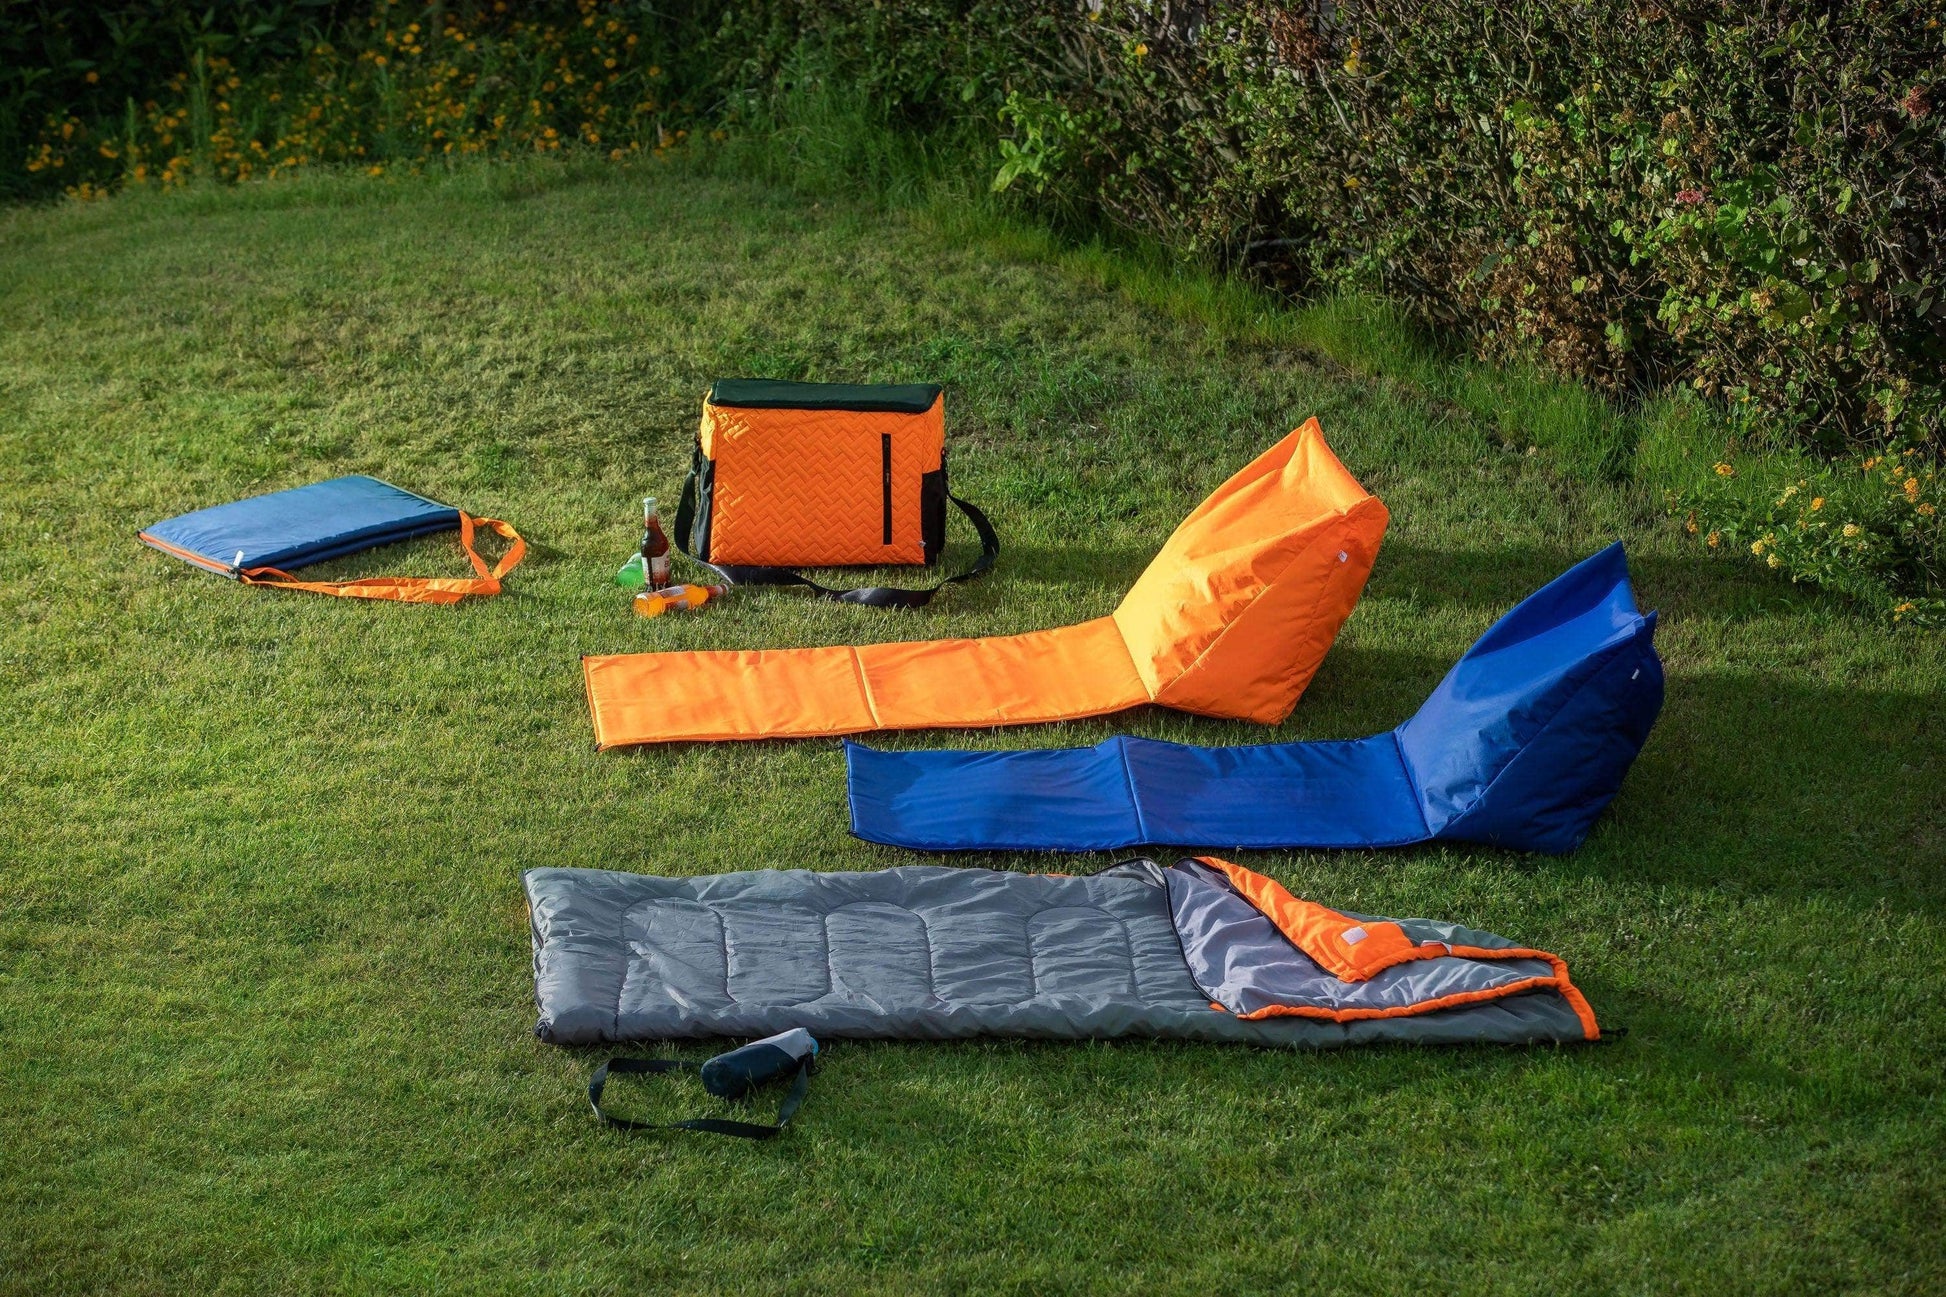 Penguin Camping & Hiking Premium Sleeping Bag